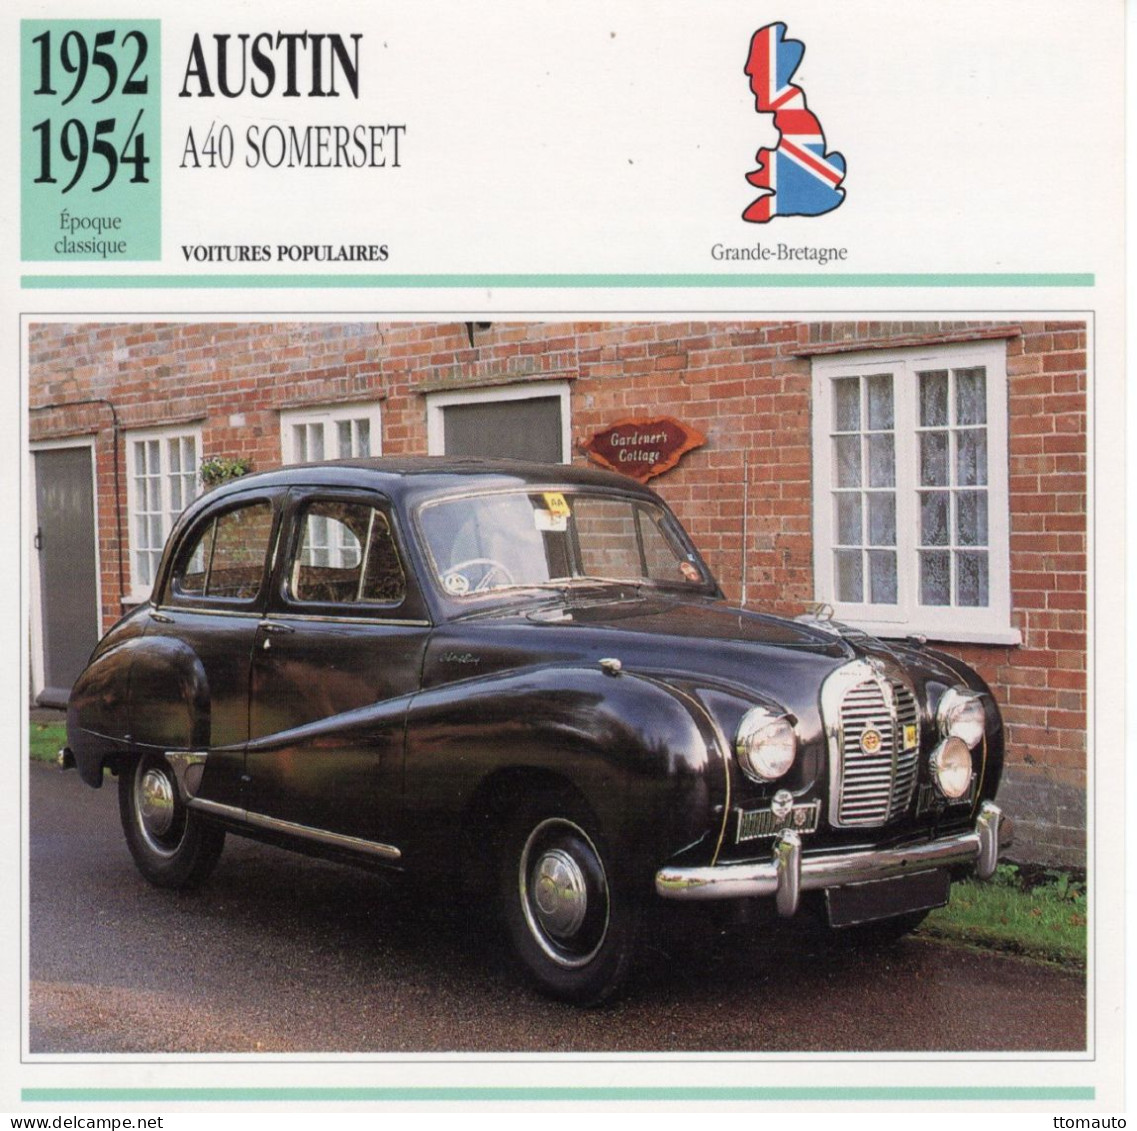 Austin A40 Somerset -  1953  - Voiture Populaire -  Fiche Technique Automobile (GB) - Voitures